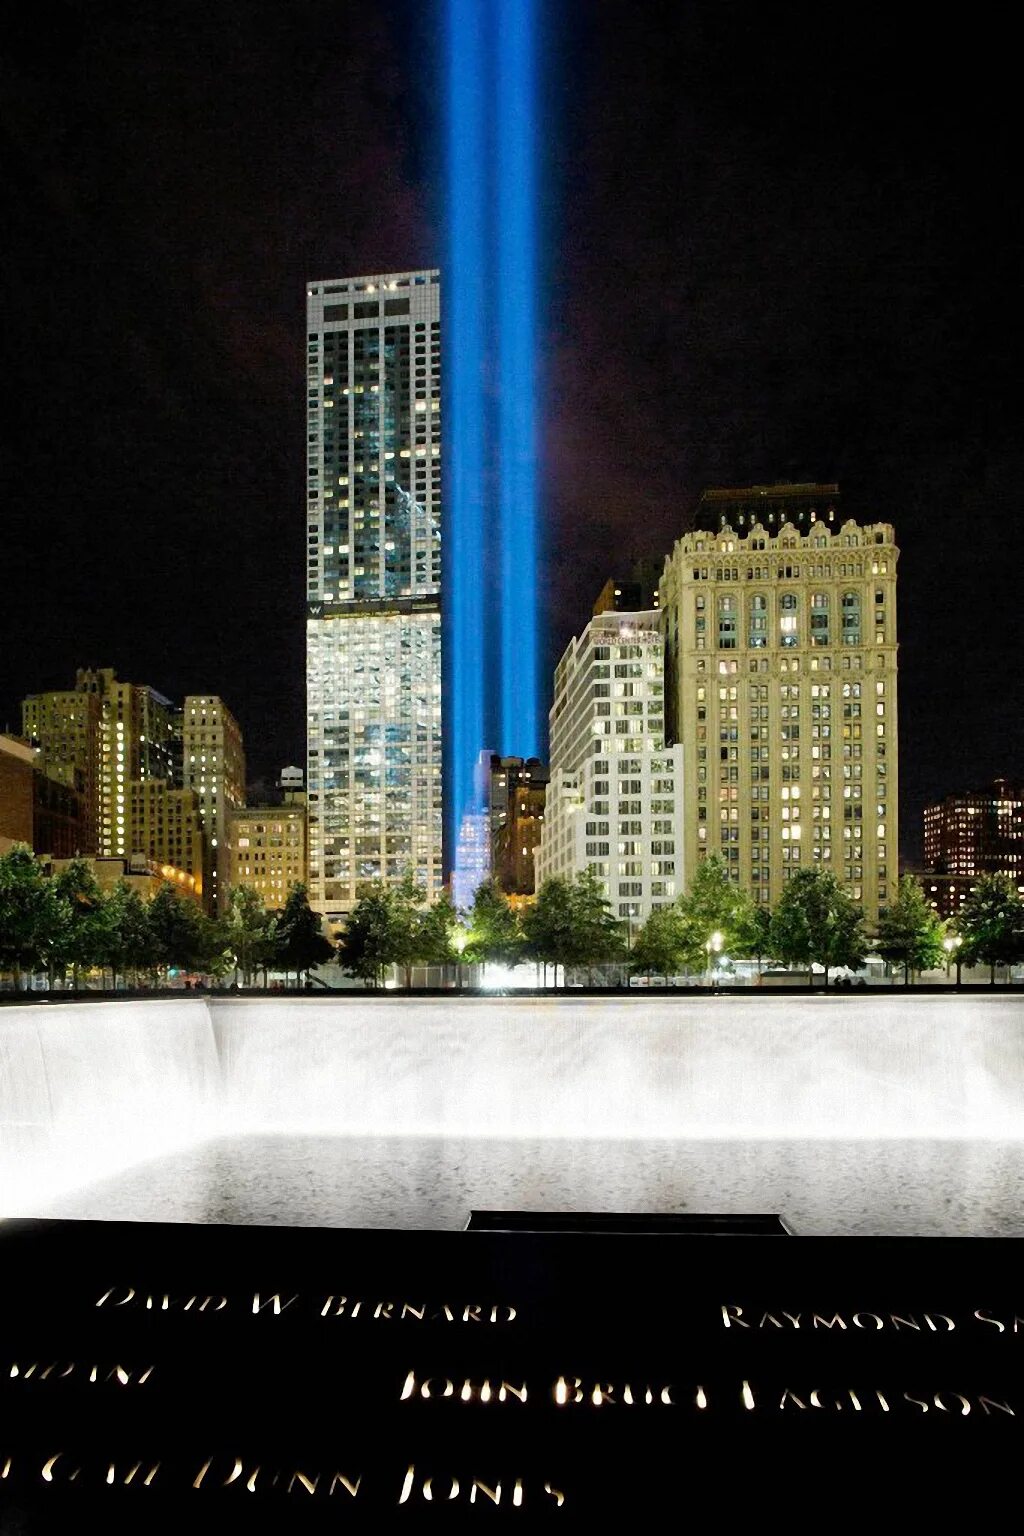 Мемориал башни Близнецы в Нью-Йорке. Мемориал памяти 11 сентября в Нью-Йорке. Памятник башням близнецам в Нью-Йорке. Мемориал башни Близнецы в Нью-Йорке ночью.